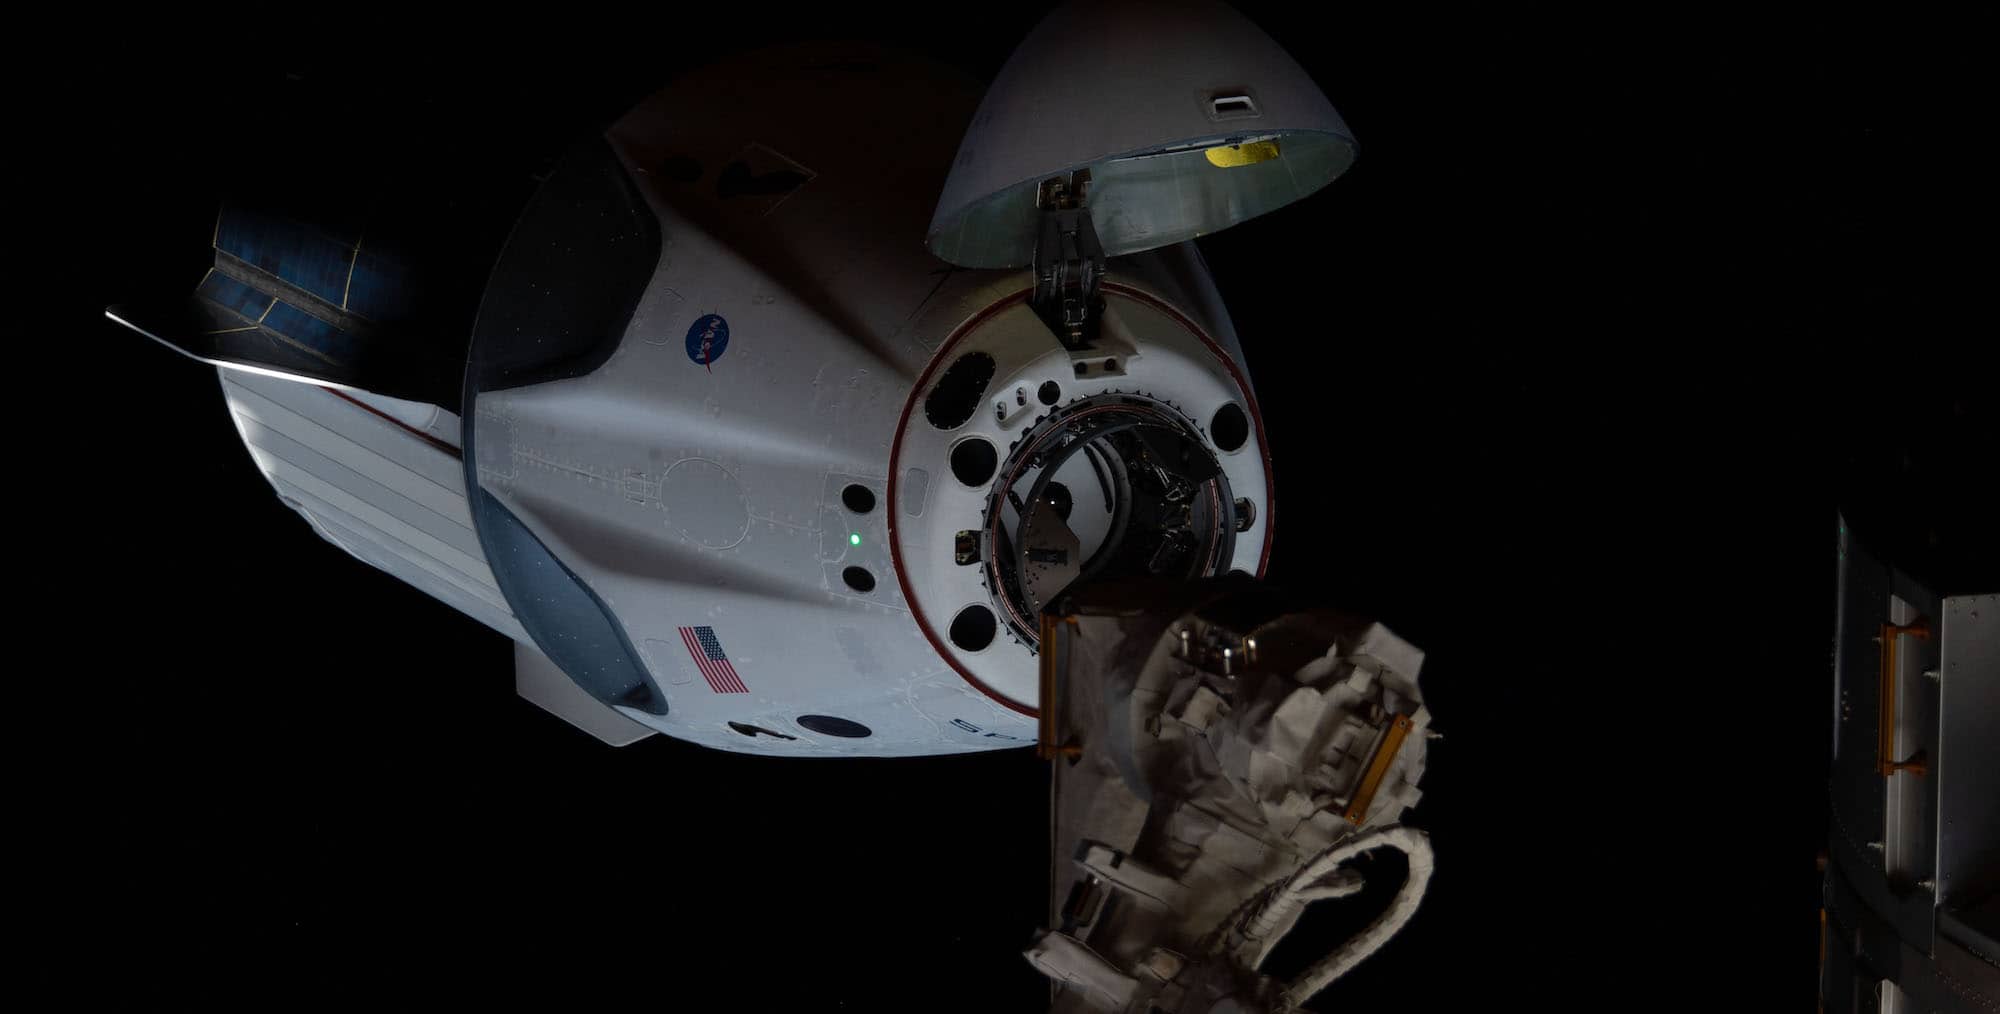 La Crew Dragon Endeavour du vol Demo-2 s’approche de l’ISS le 31 mai 2020. C’est cette même capsule, revenue sur Terre en août 2020, qui sera employée pour le vol Crew-2 de Thomas Pesquet et ses collègues. Crédit : NASA